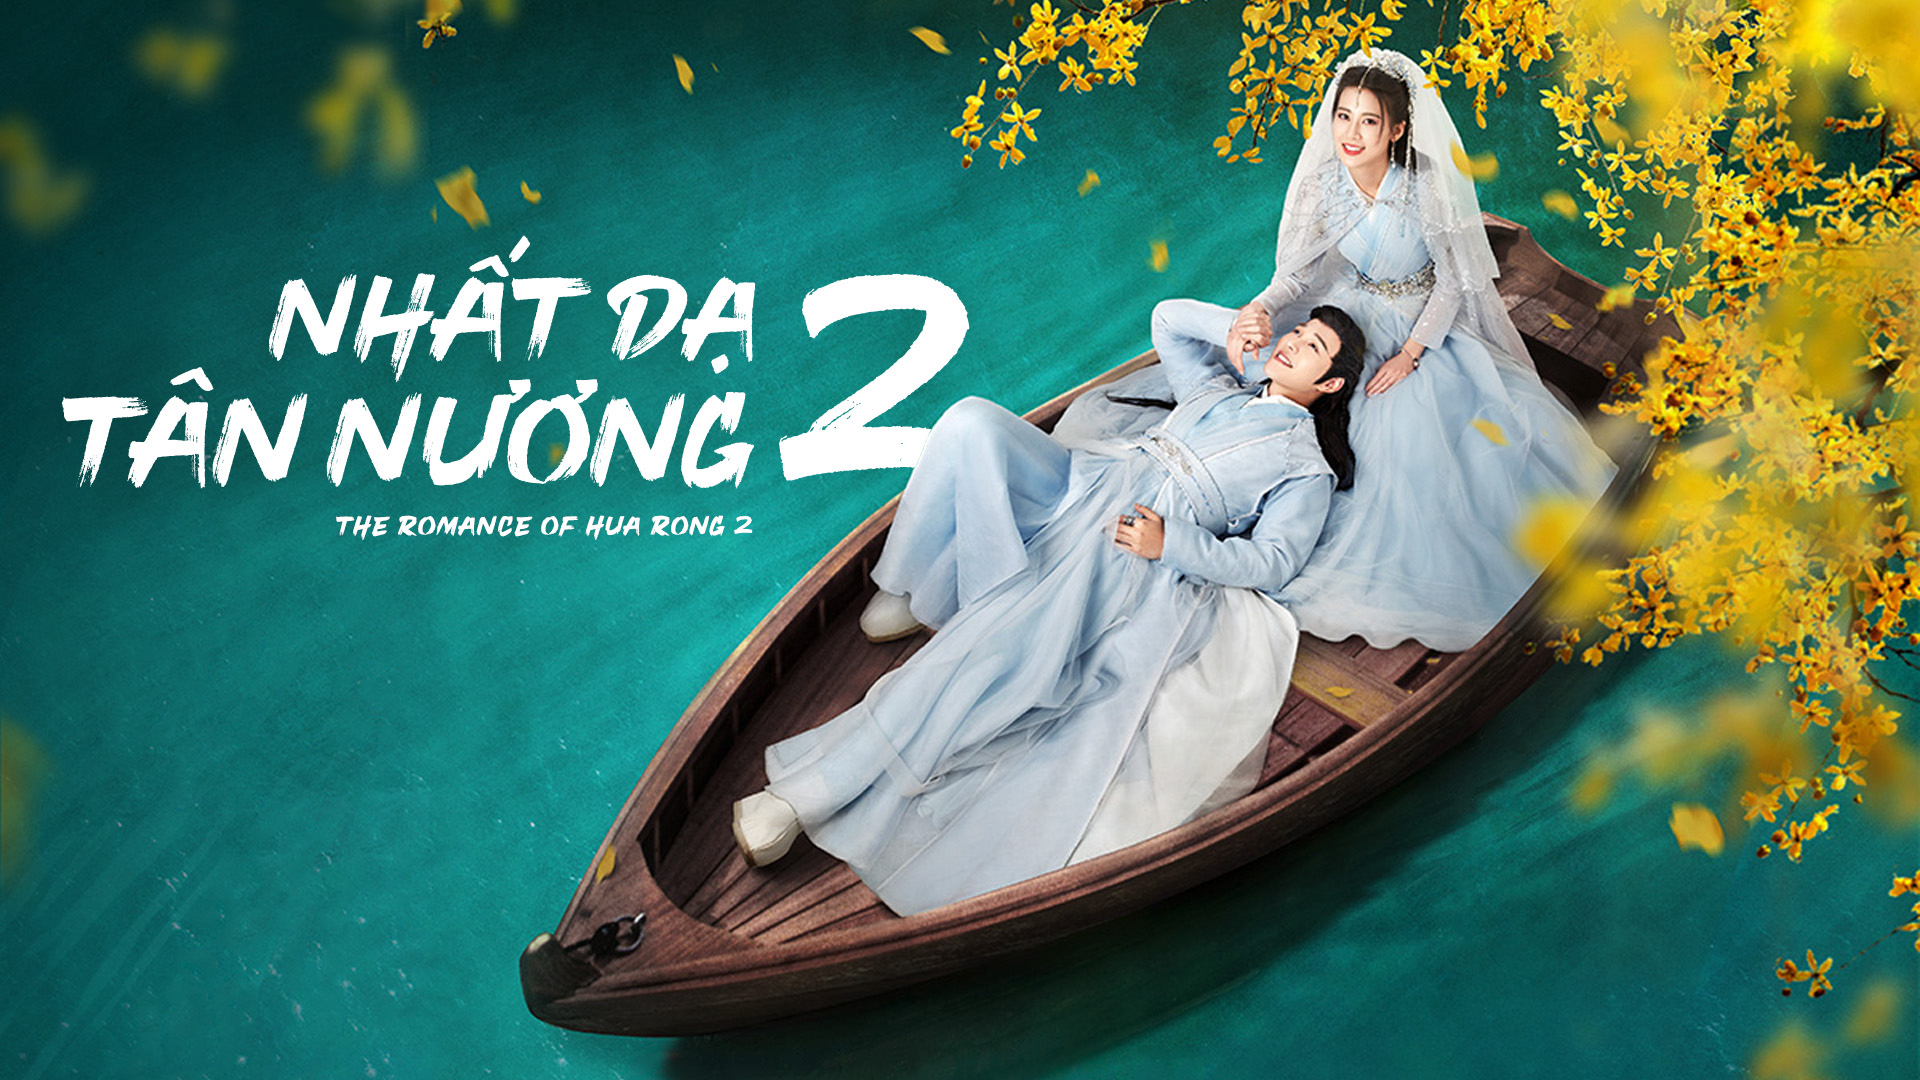 Nhất Dạ Tân Nương 2 The Romance Of Hua Rong 2